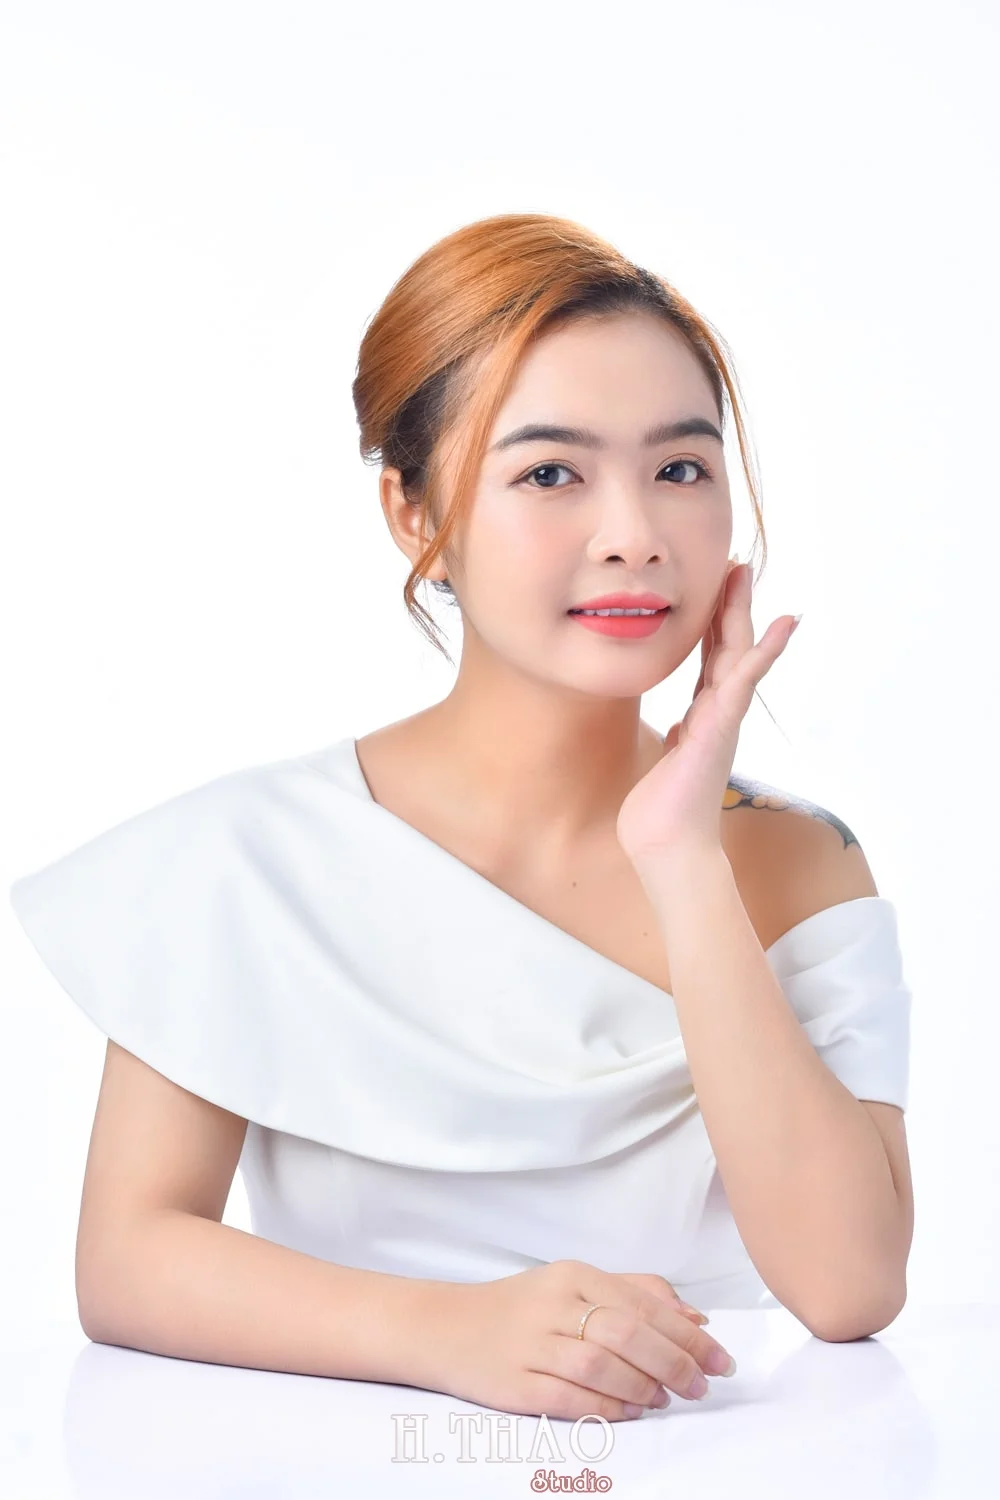 Anh doanh nhan nu 15 min - Concept chụp ảnh chân dung nữ đẹp tại Tp.HCM – HThao Studio